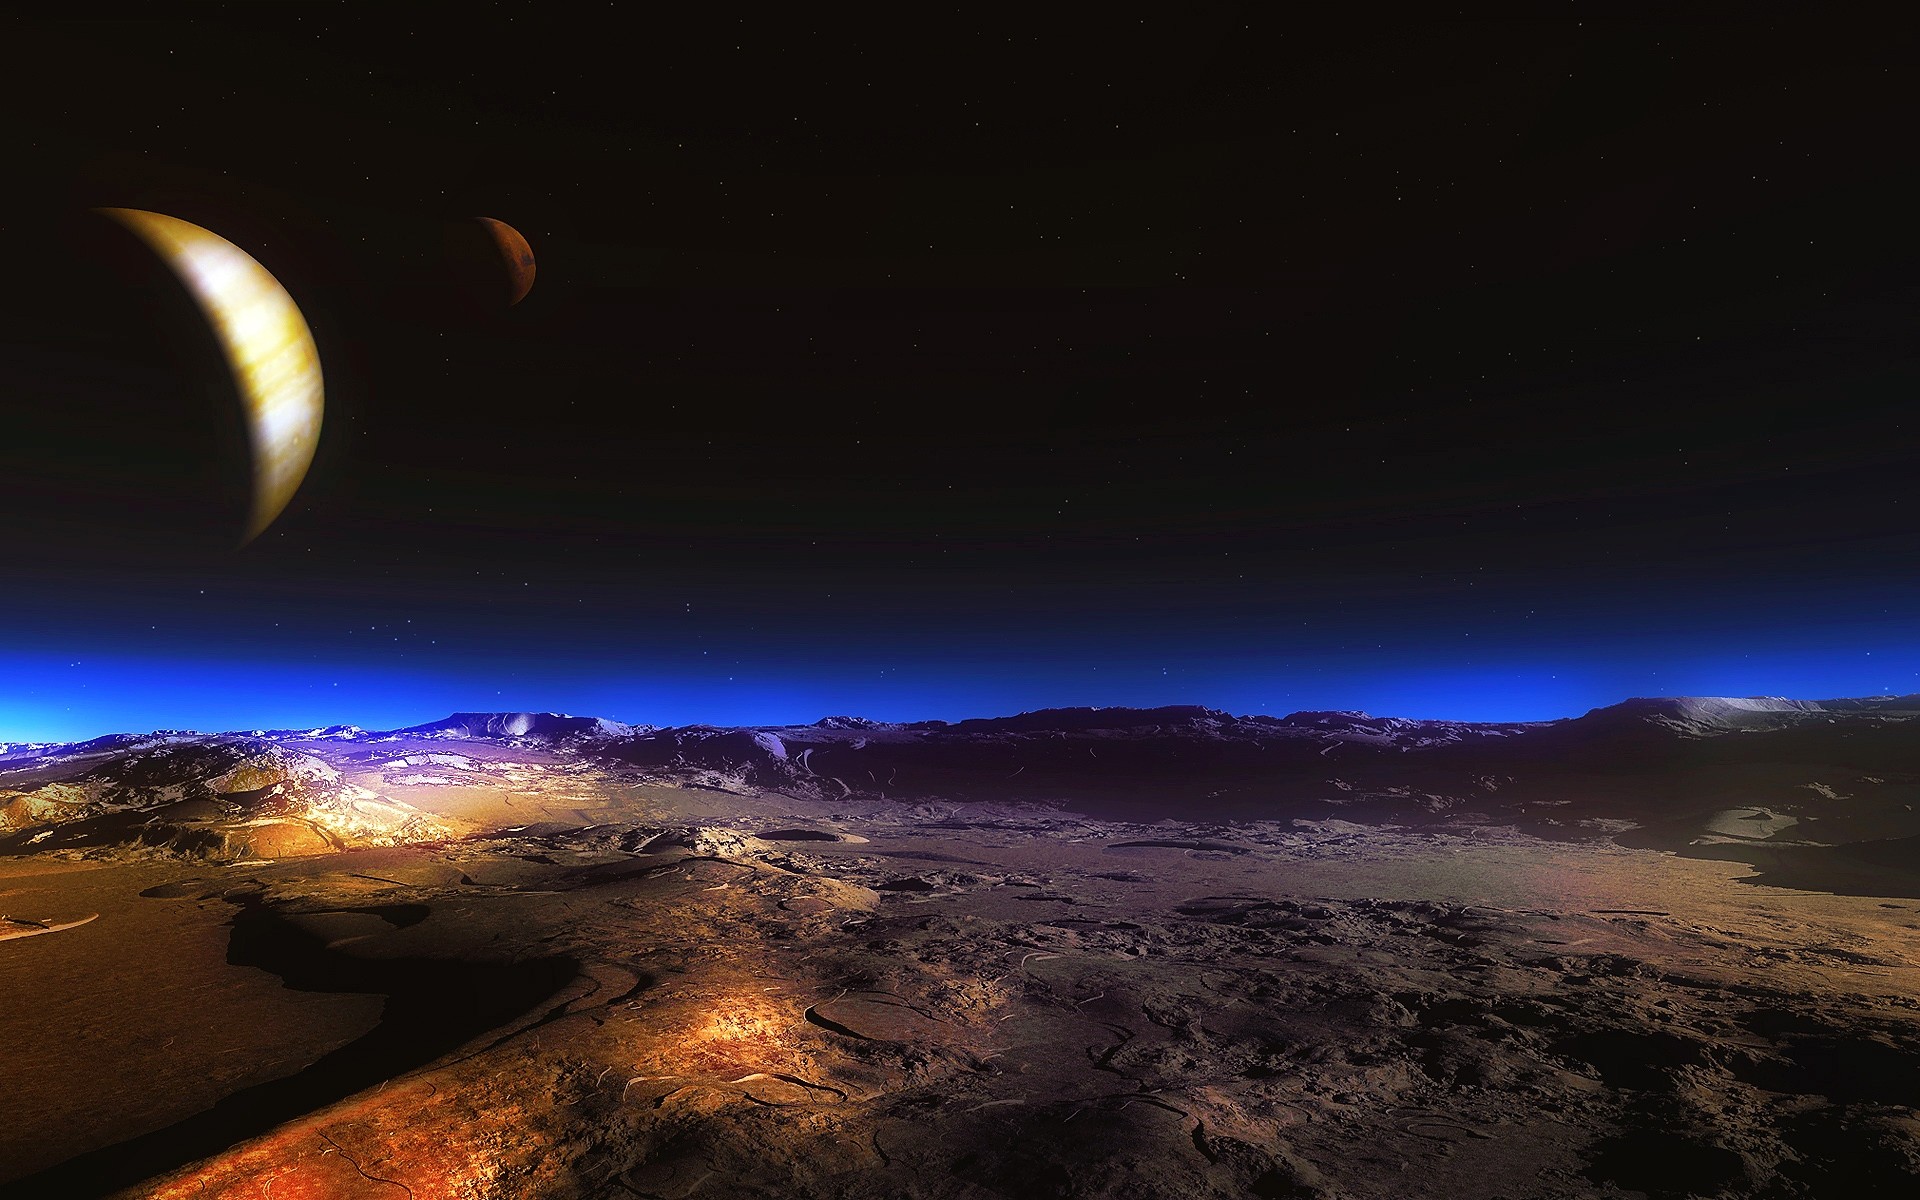 космос луна закат небо солнце рассвет астрономия пейзаж вечером природа путешествия сумрак пустыня горы планеты свет на открытом воздухе шарообразные живописный планет земля звезды